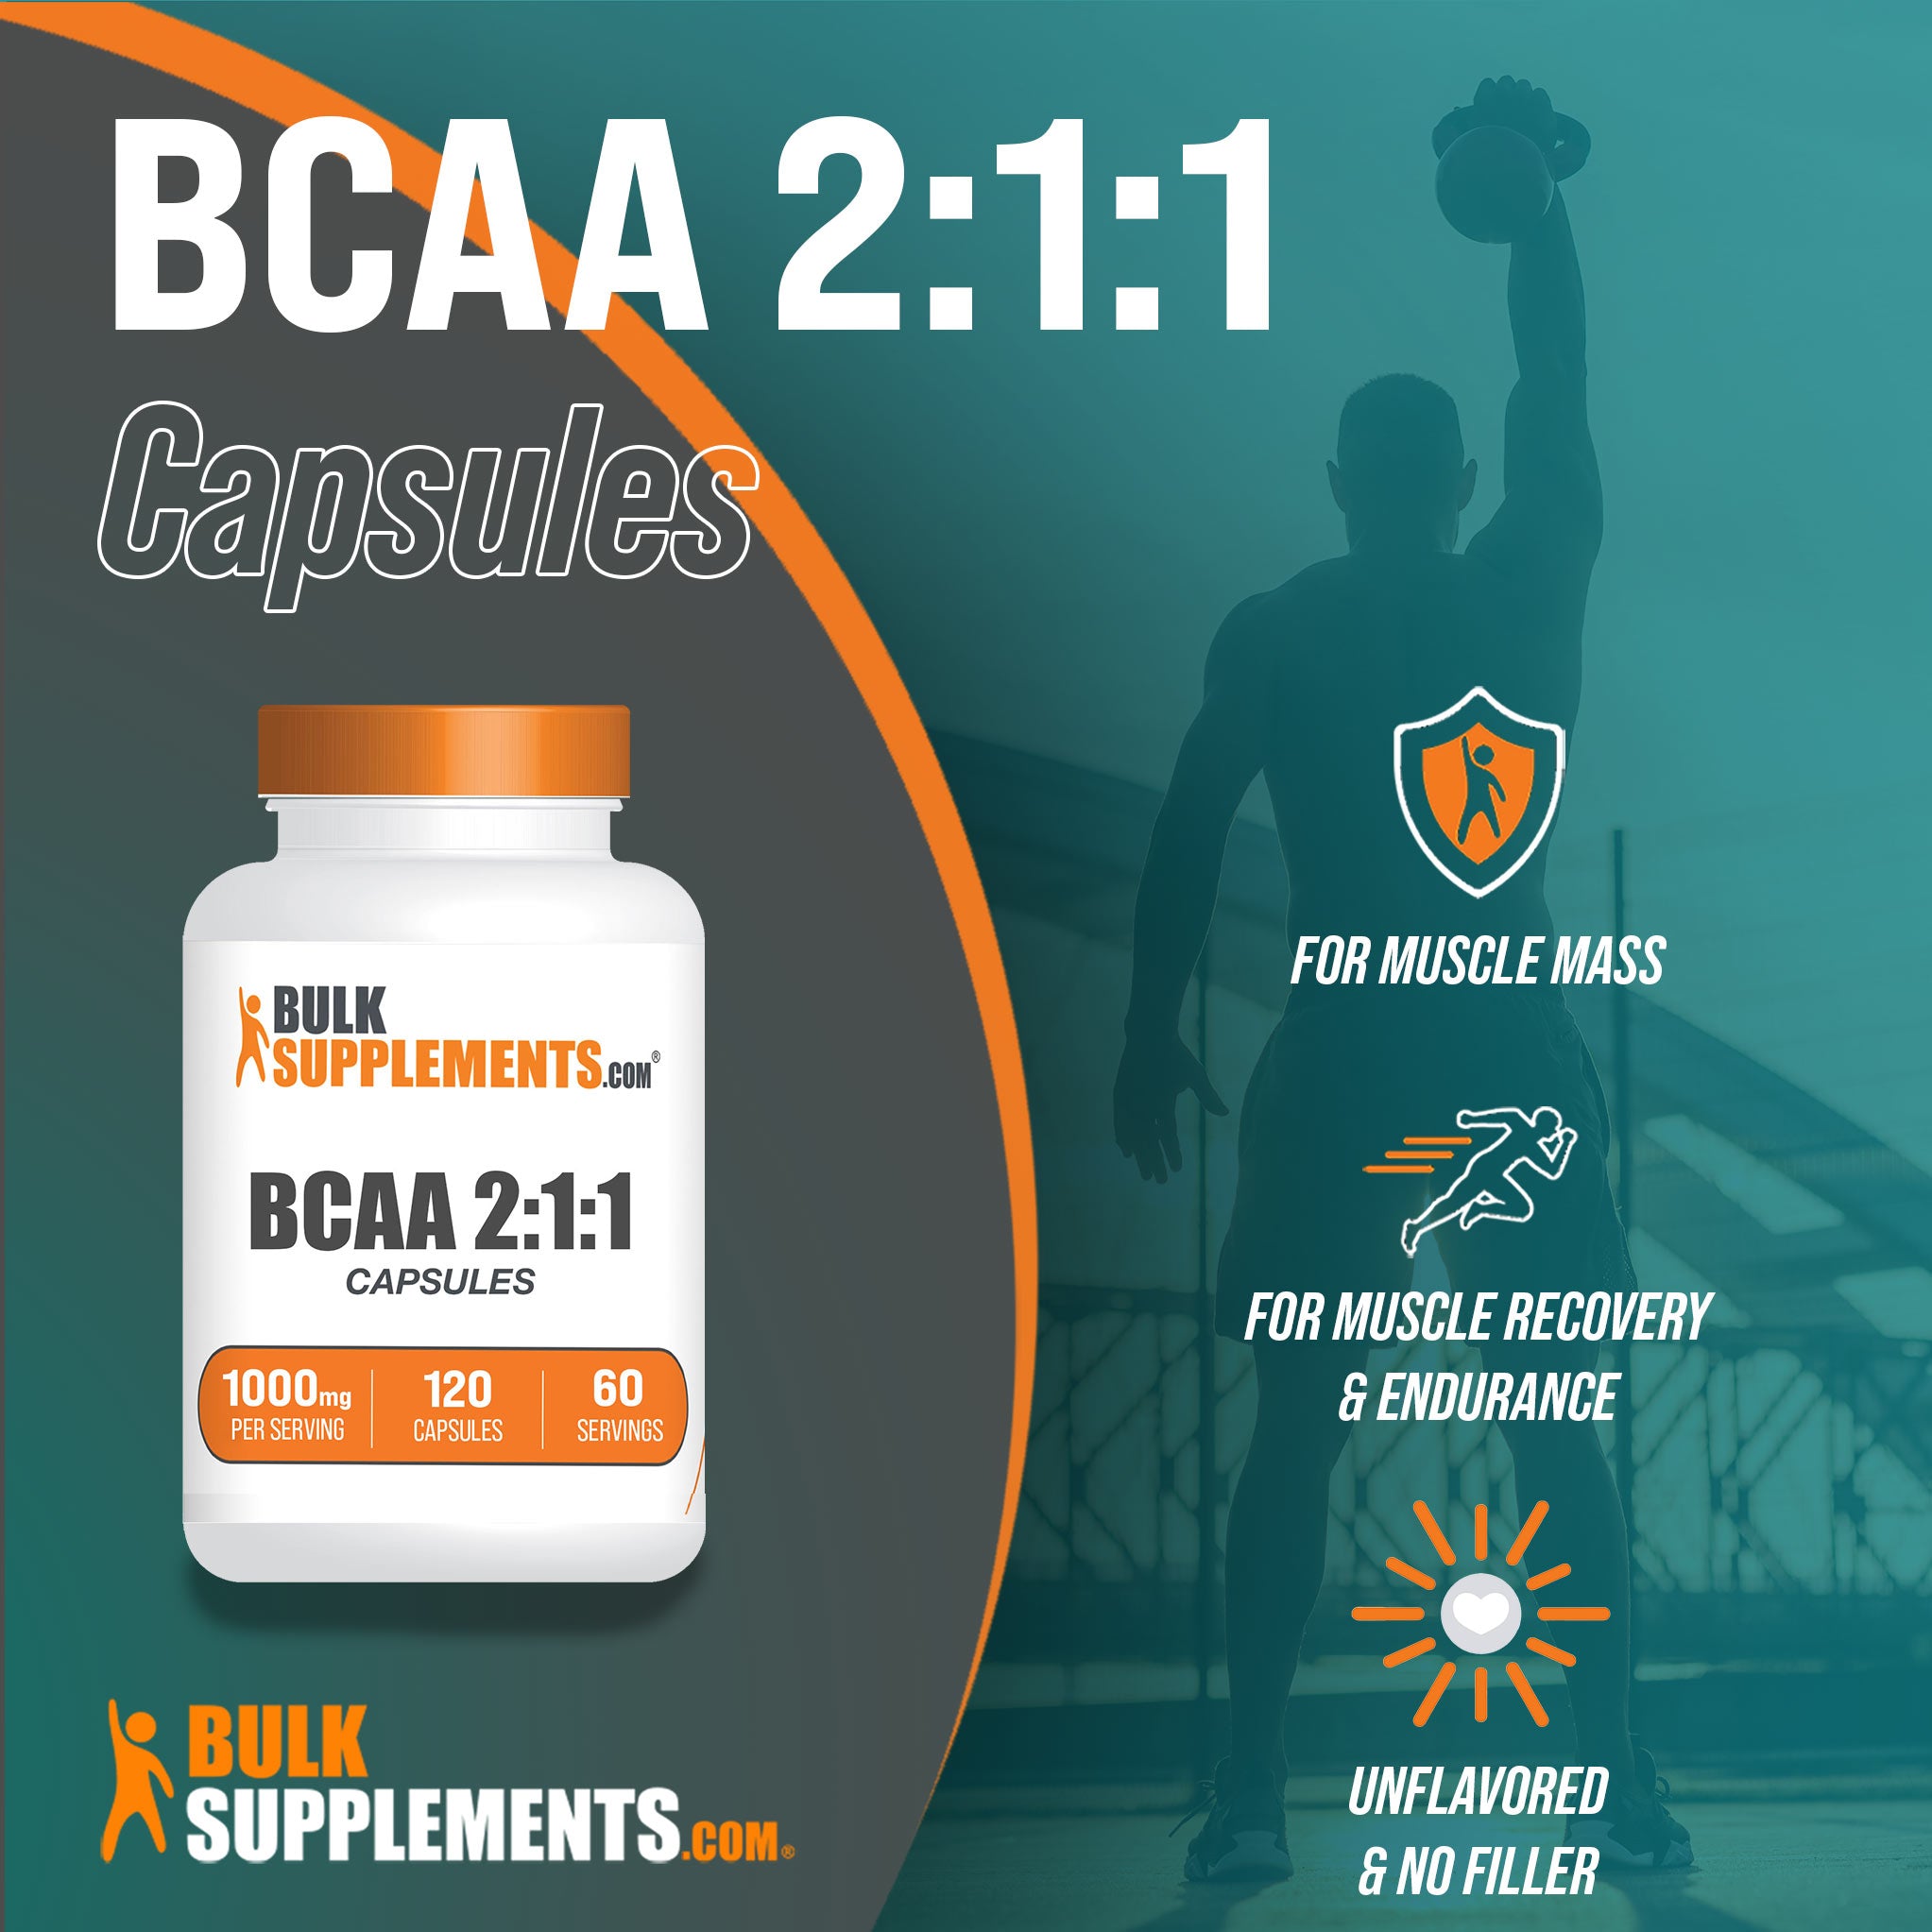 BCAA supplement